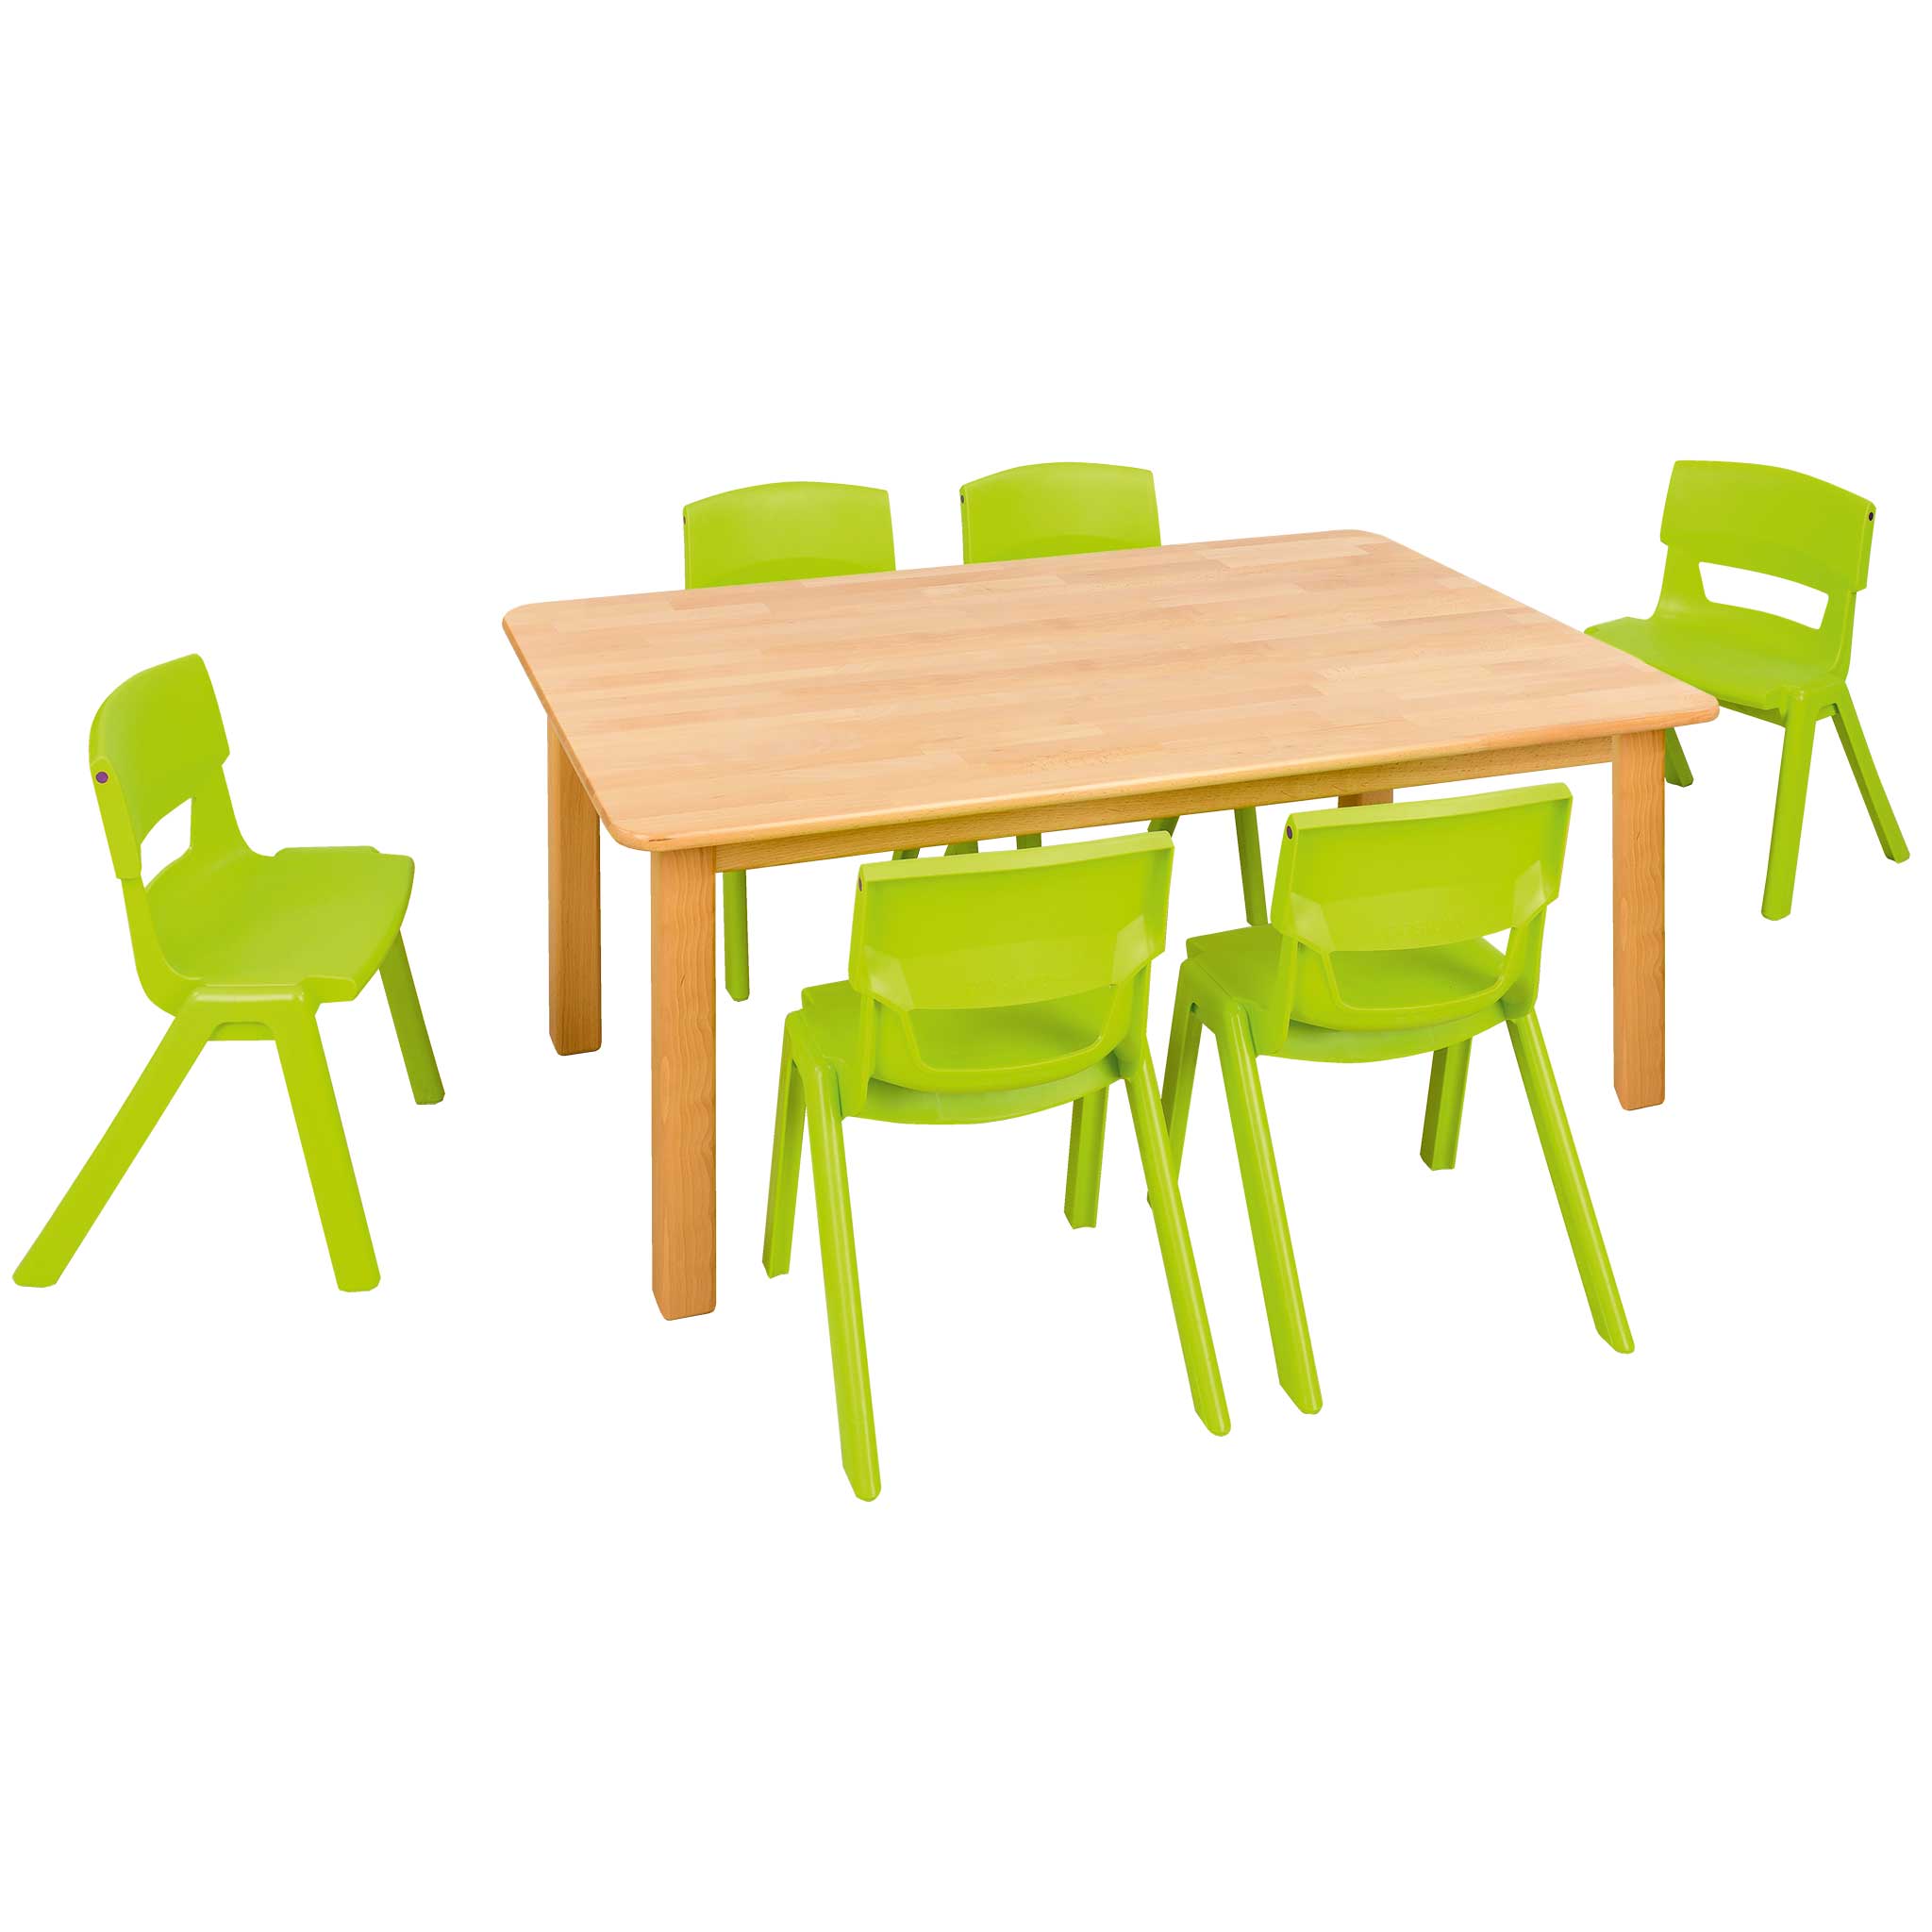 Spar-Set Massiv Zwei Tischhöhe: 58 cm, Sitzhöhe: 35 cm